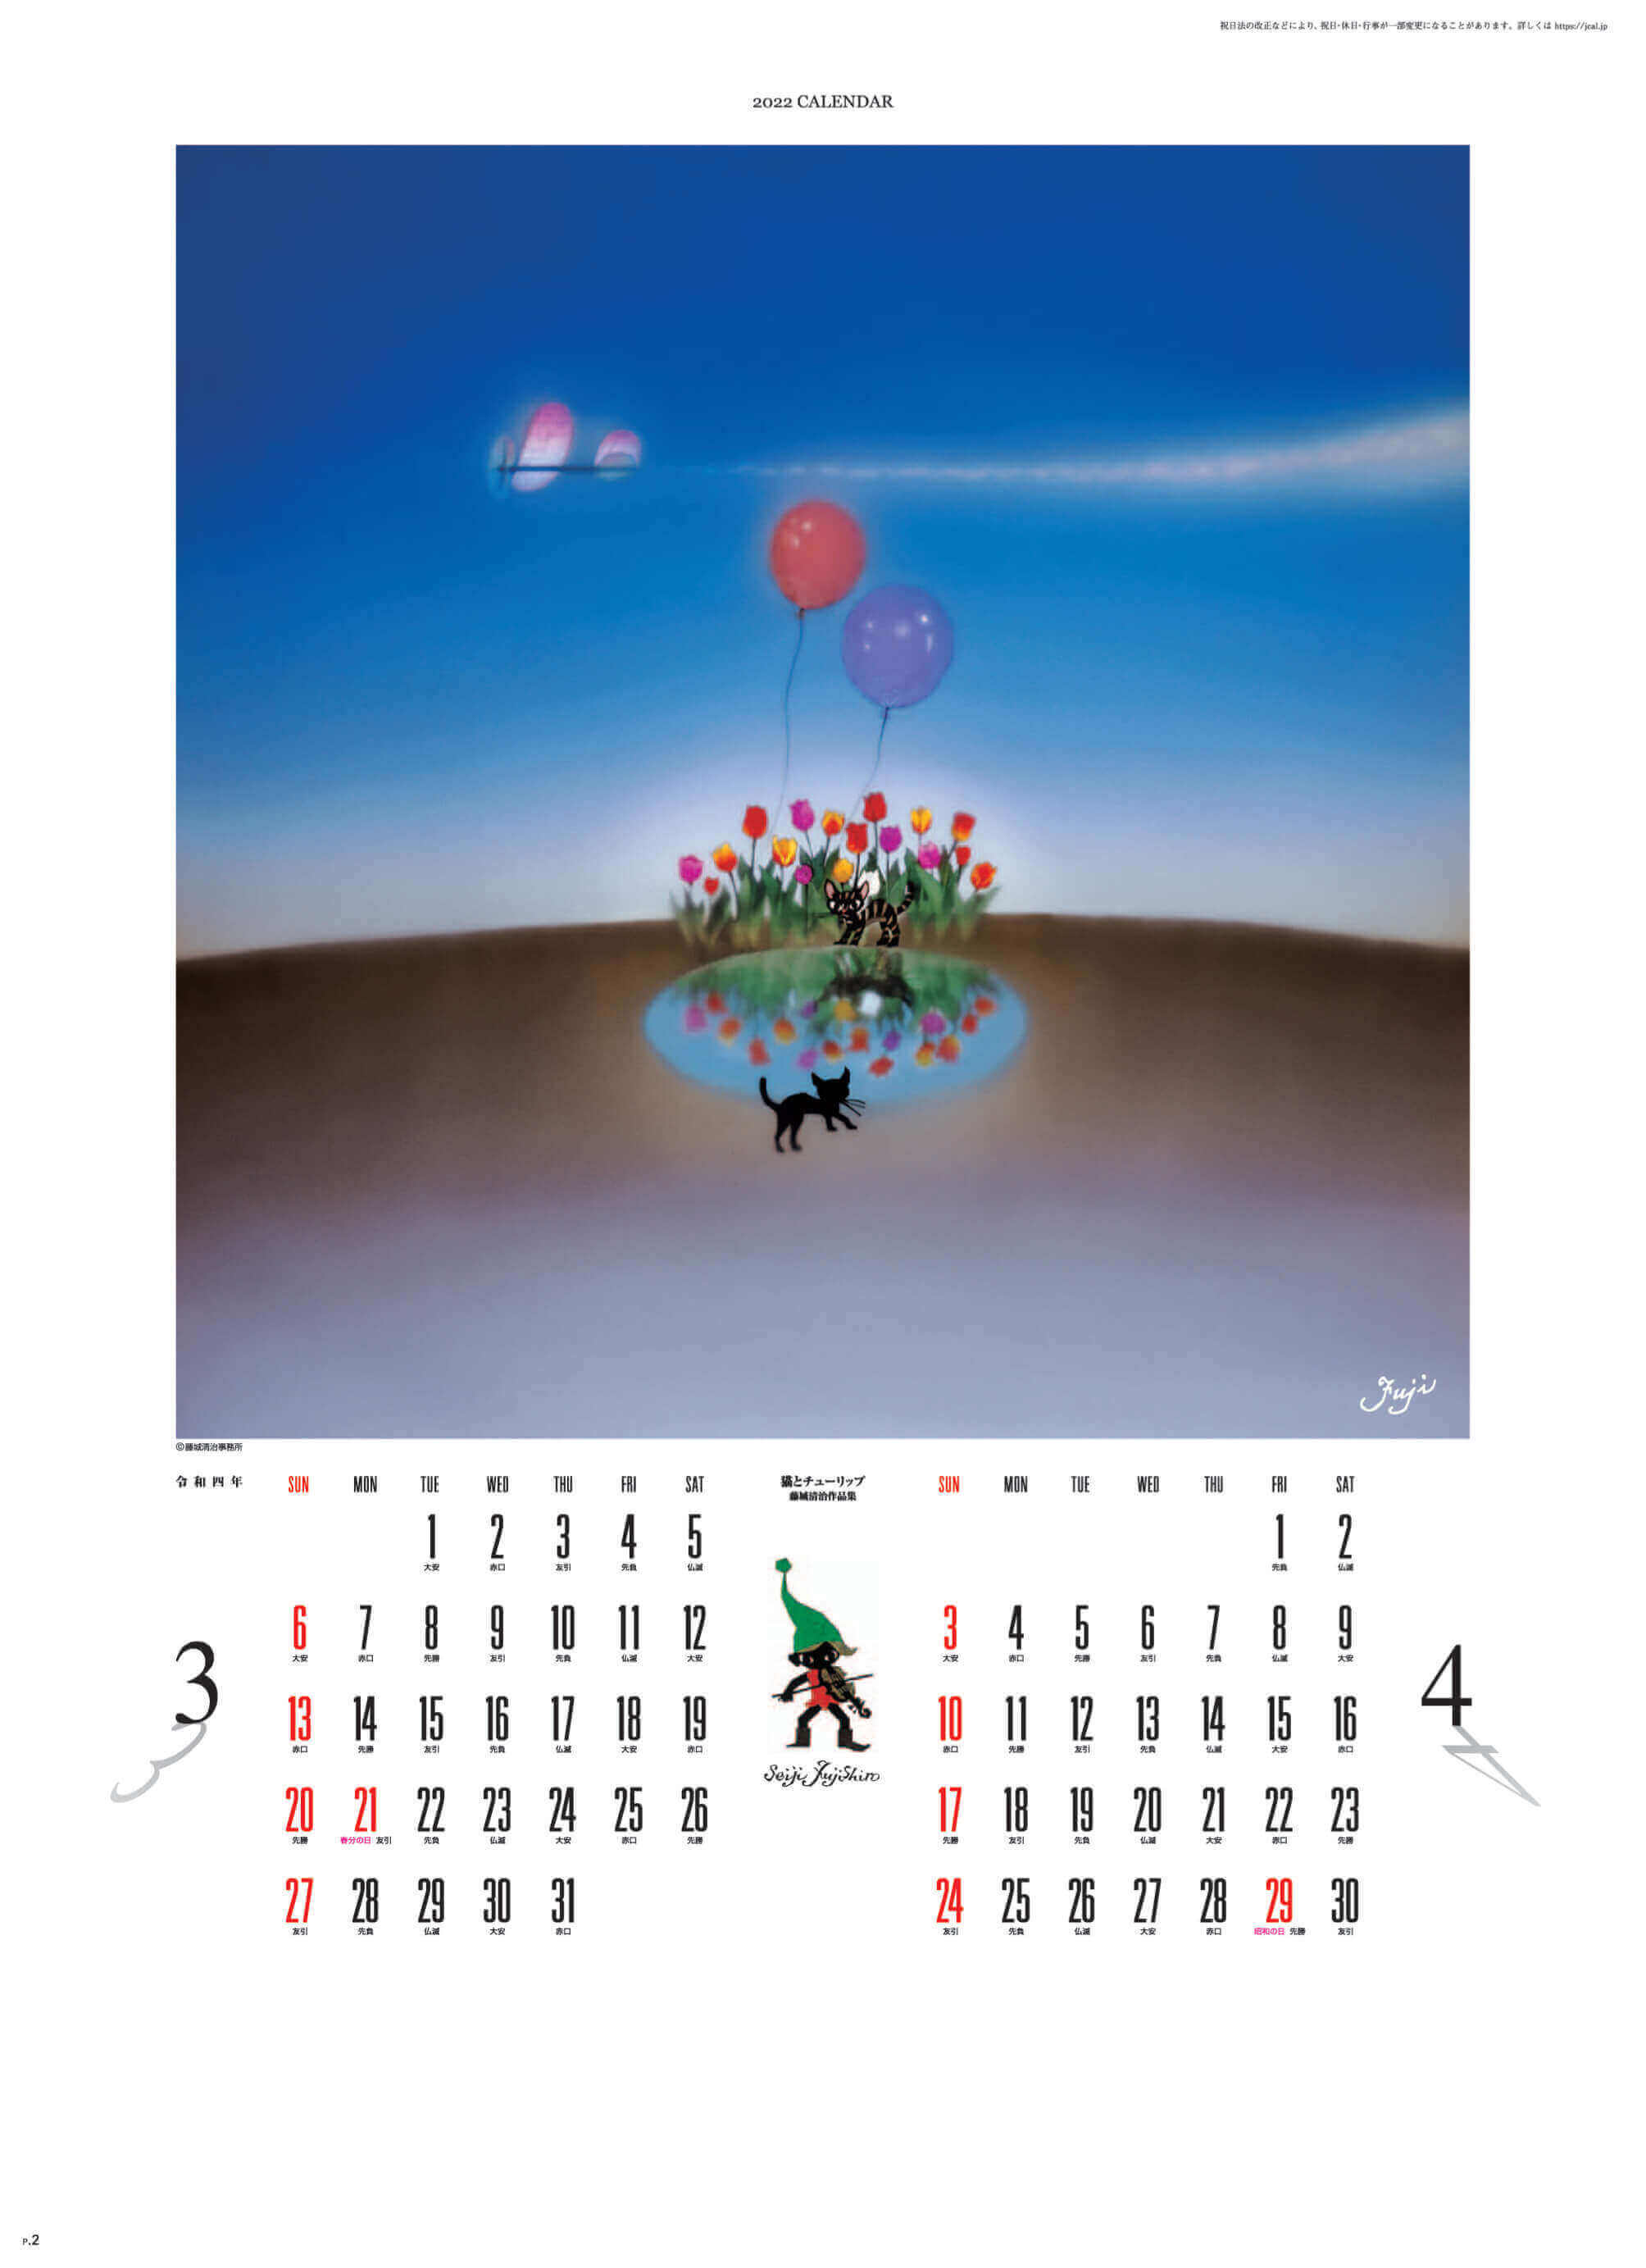 3-4月 猫とチューリップ 遠い日の風景から(影絵) 藤城清治 2022年カレンダーの画像